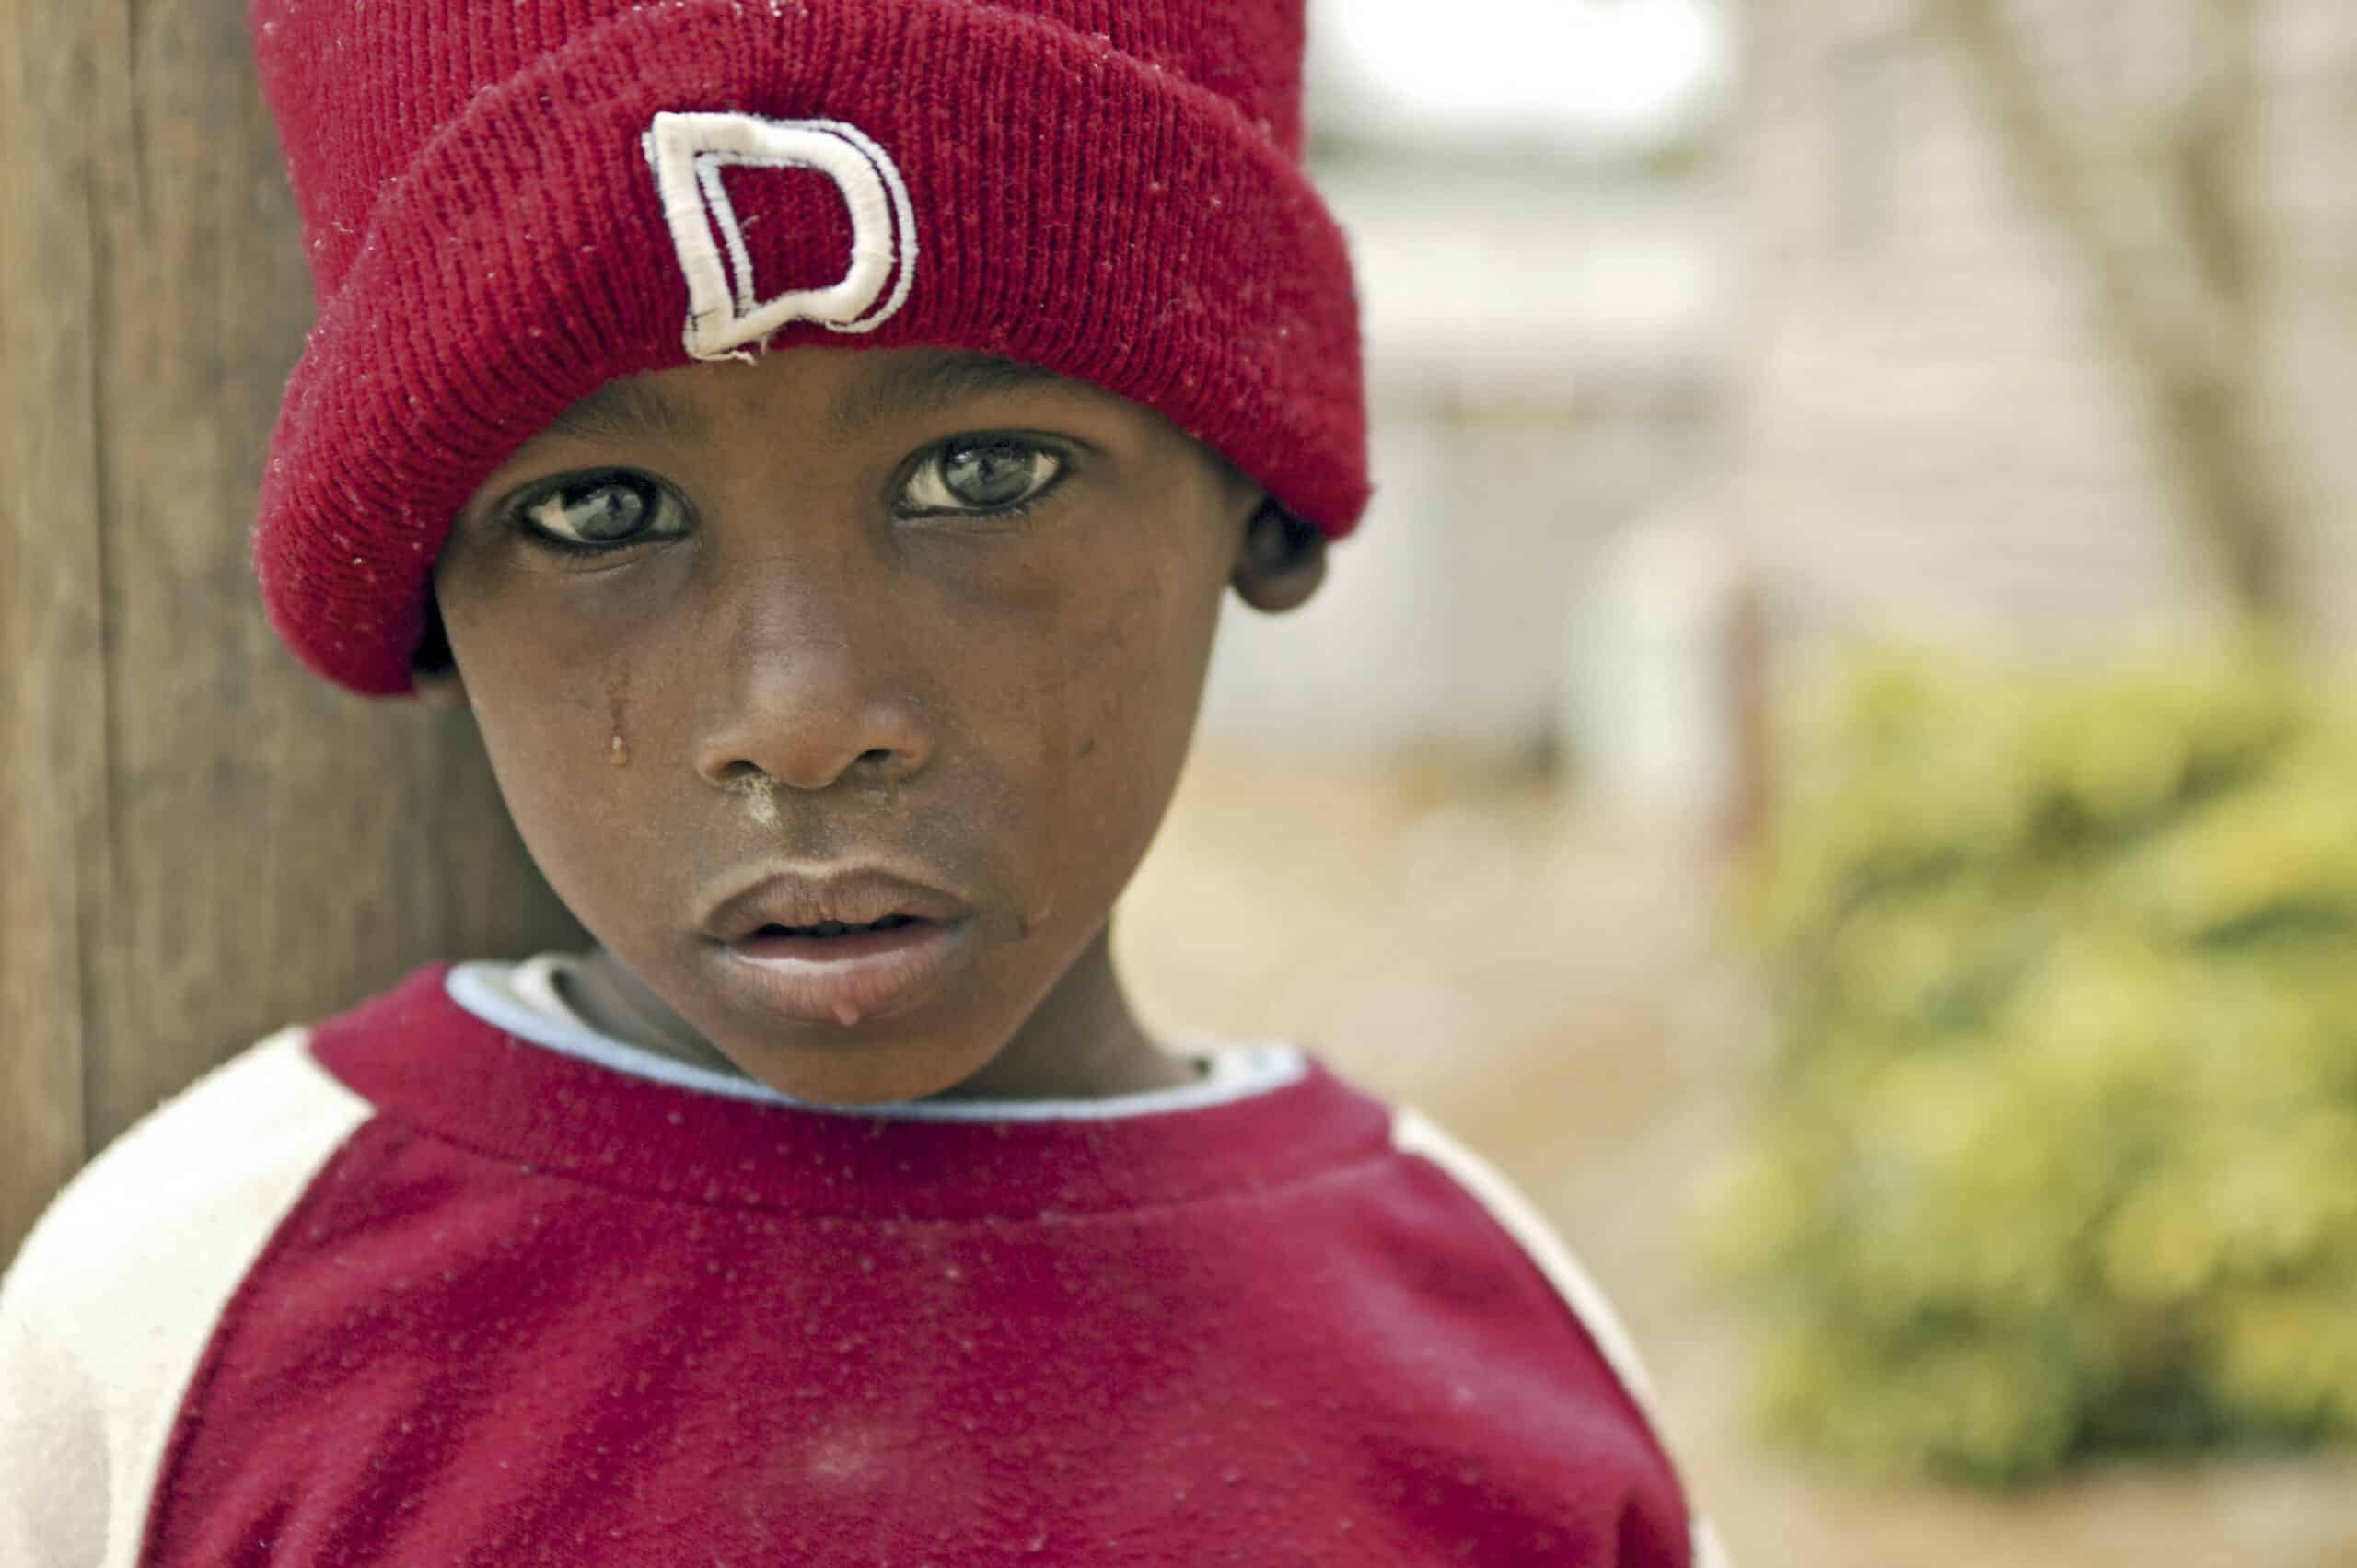 Ein kleiner Junge mit ernstem Blick und einer roten Mütze mit dem Buchstaben „D“ steht draußen und blickt direkt in die Kamera. Sein Gesicht zeigt Tränenspuren, die seinen ergreifenden Ausdruck noch verstärken. © Fotografie Tomas Rodriguez